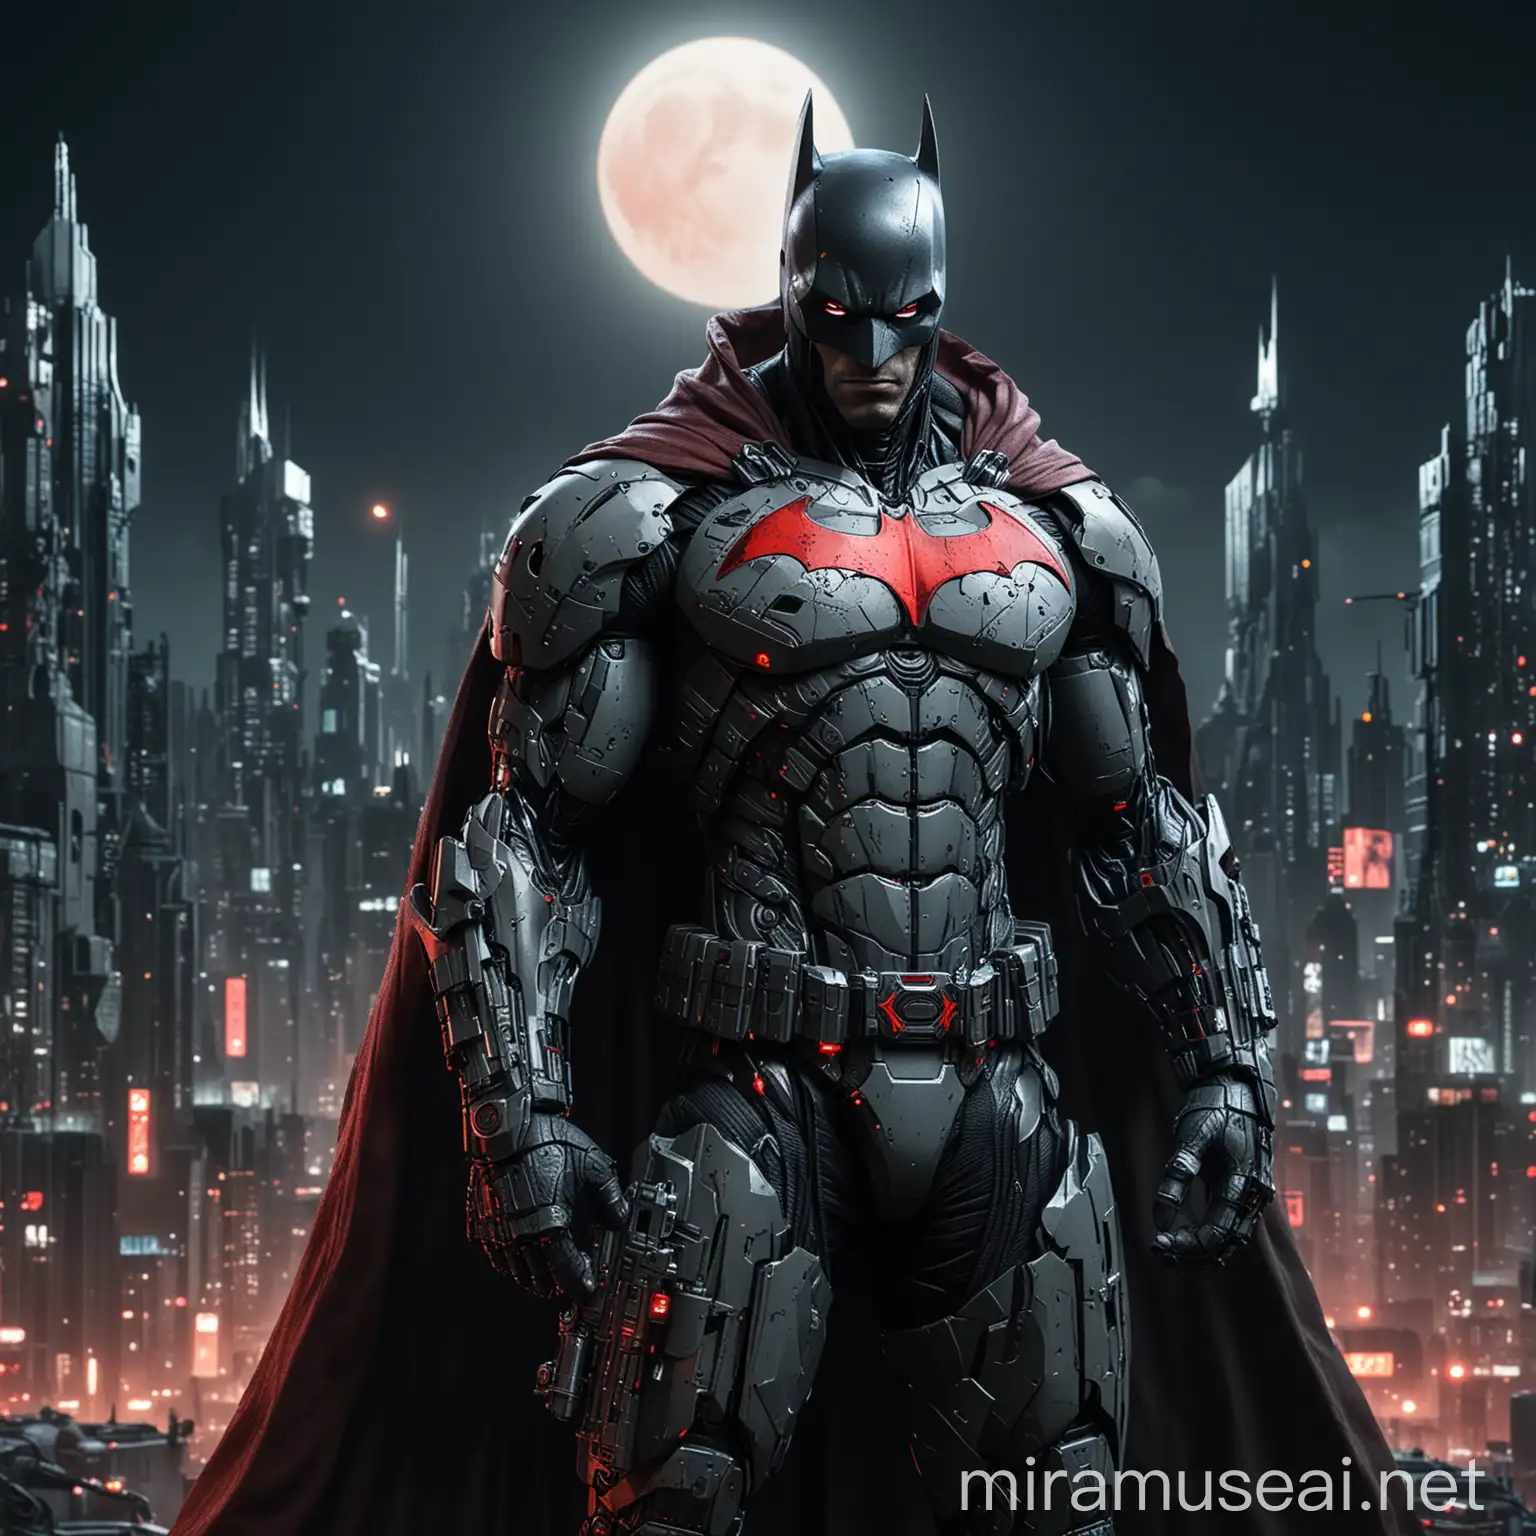 Cyborg Batman with Cybernetic Gun in Night Gotham City